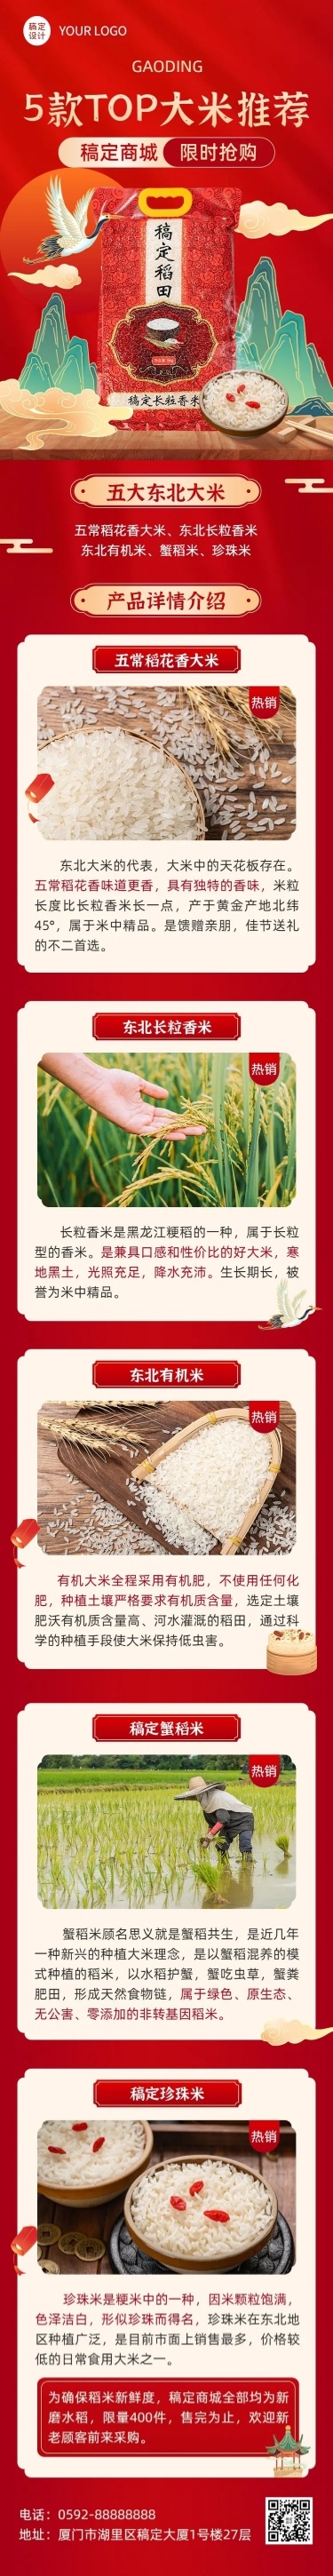 餐饮美食大米产品展示文章长图